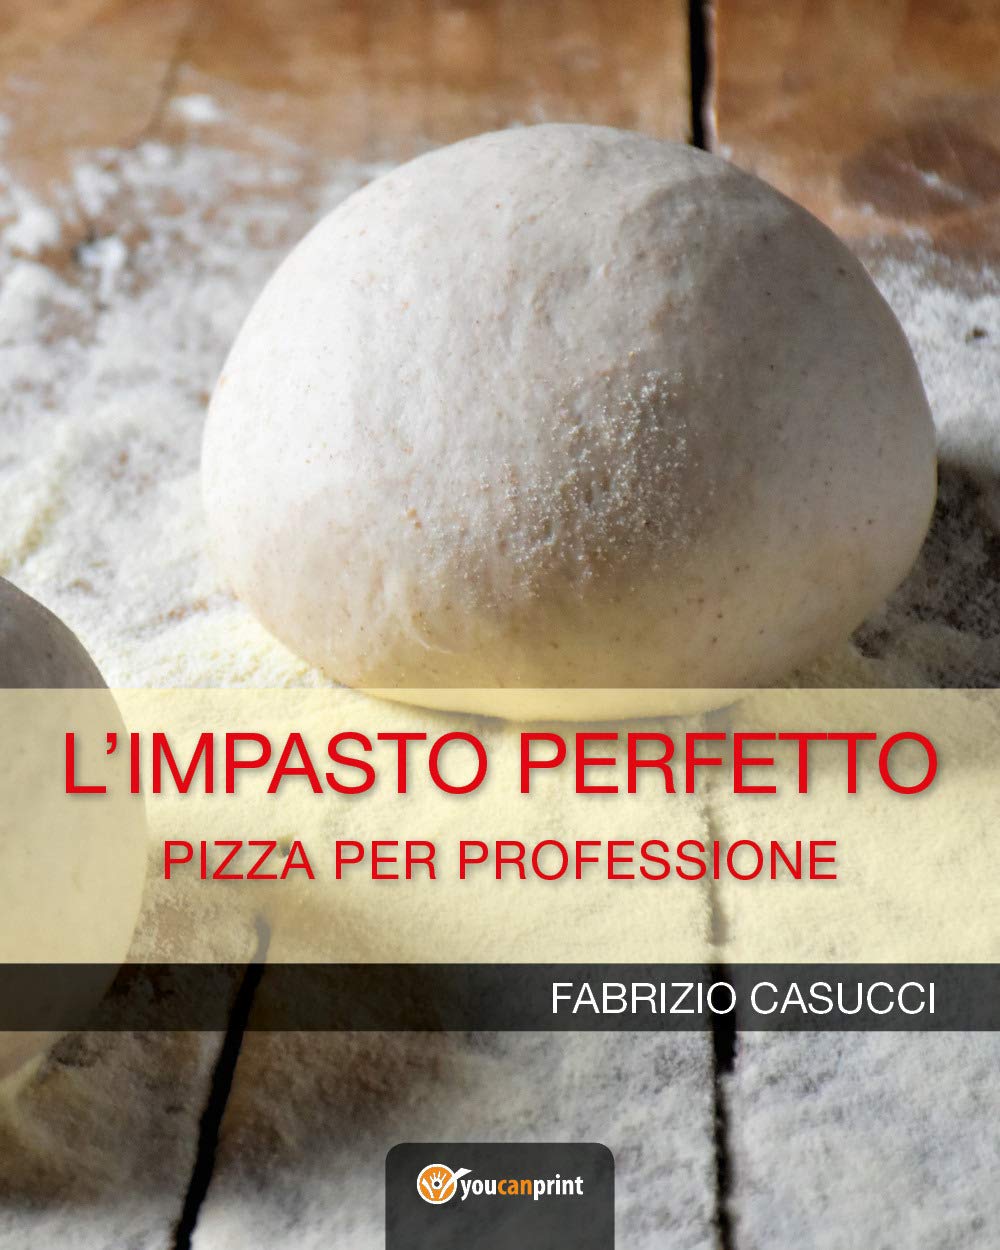 L'impasto Perfetto: Pizza per professione (Fabrizio Casucci)